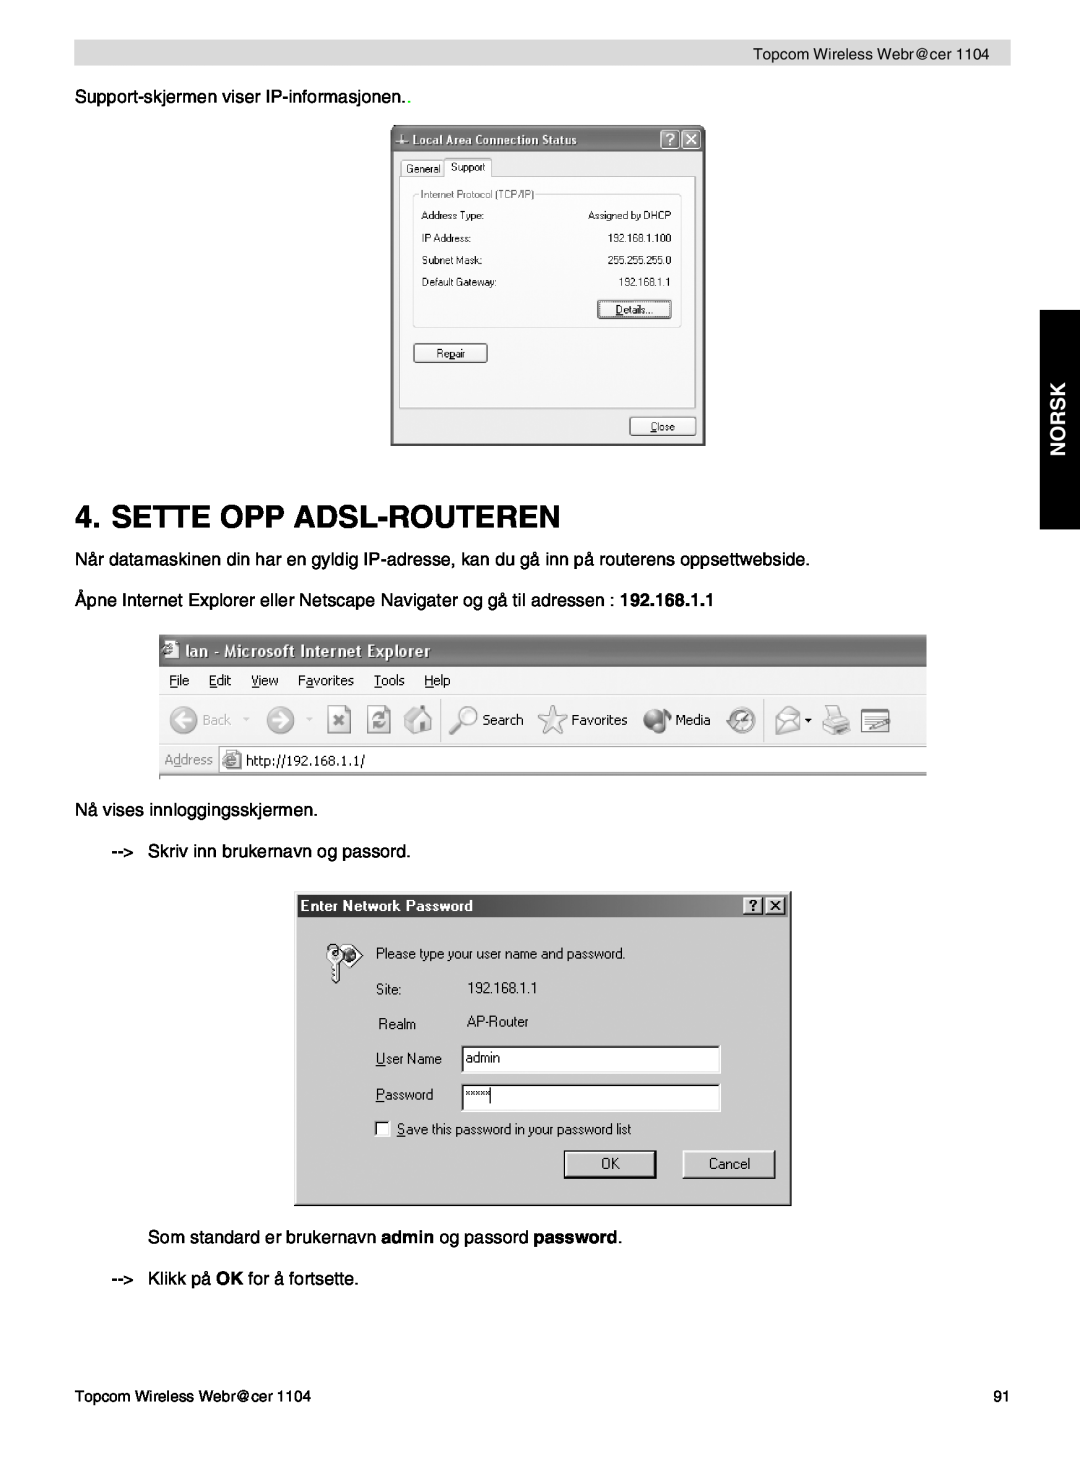 Topcom 1104 manual do utilizador Sette Opp Adsl-Routeren, Norsk 